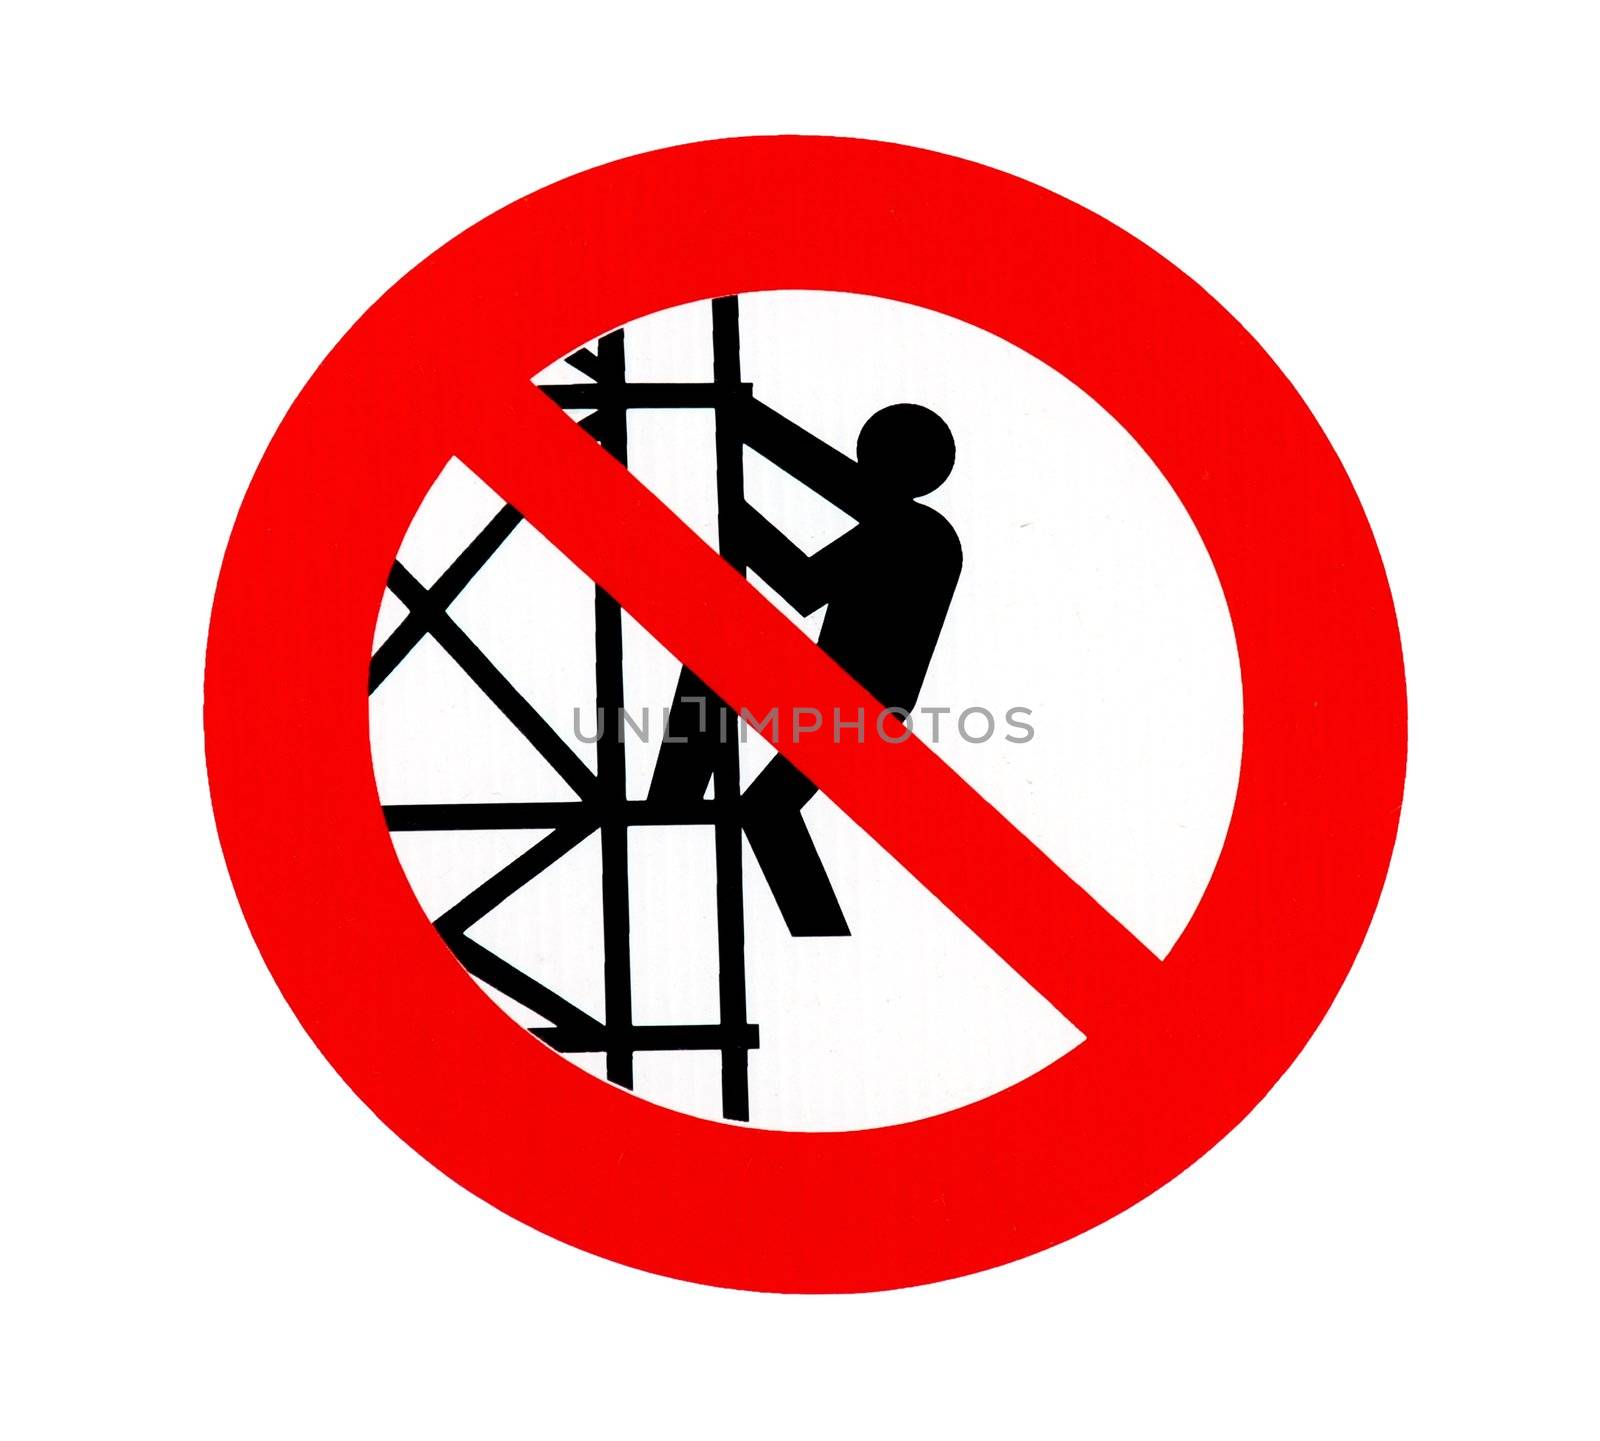 No climbing sign - forbiddance symbol over white